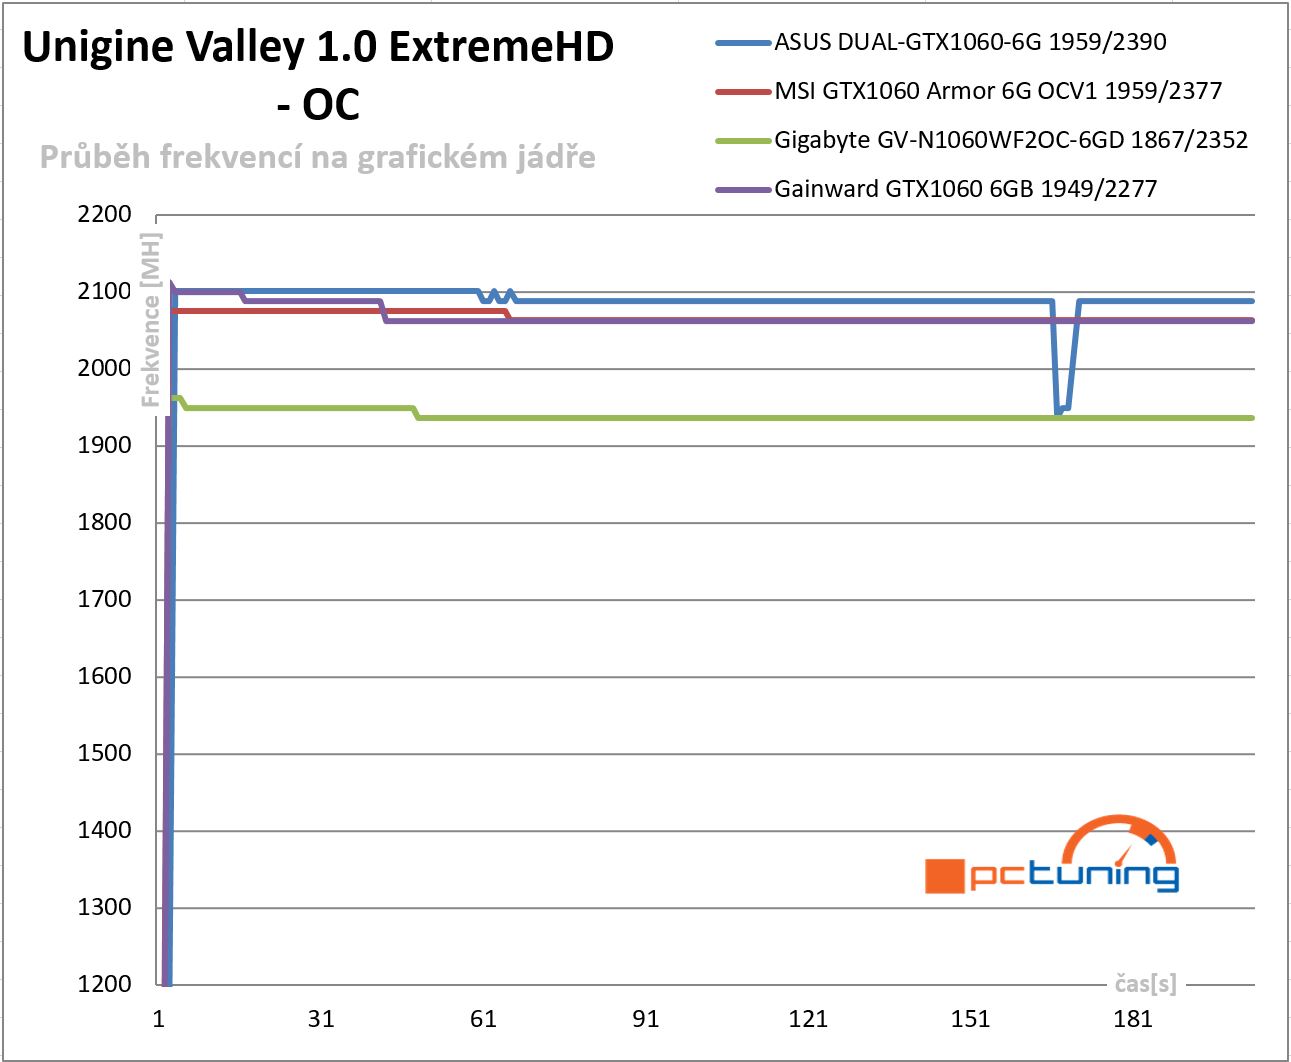  Průběhy frekvencí GPU v Unigine Valley 1.0 – po přetaktování 